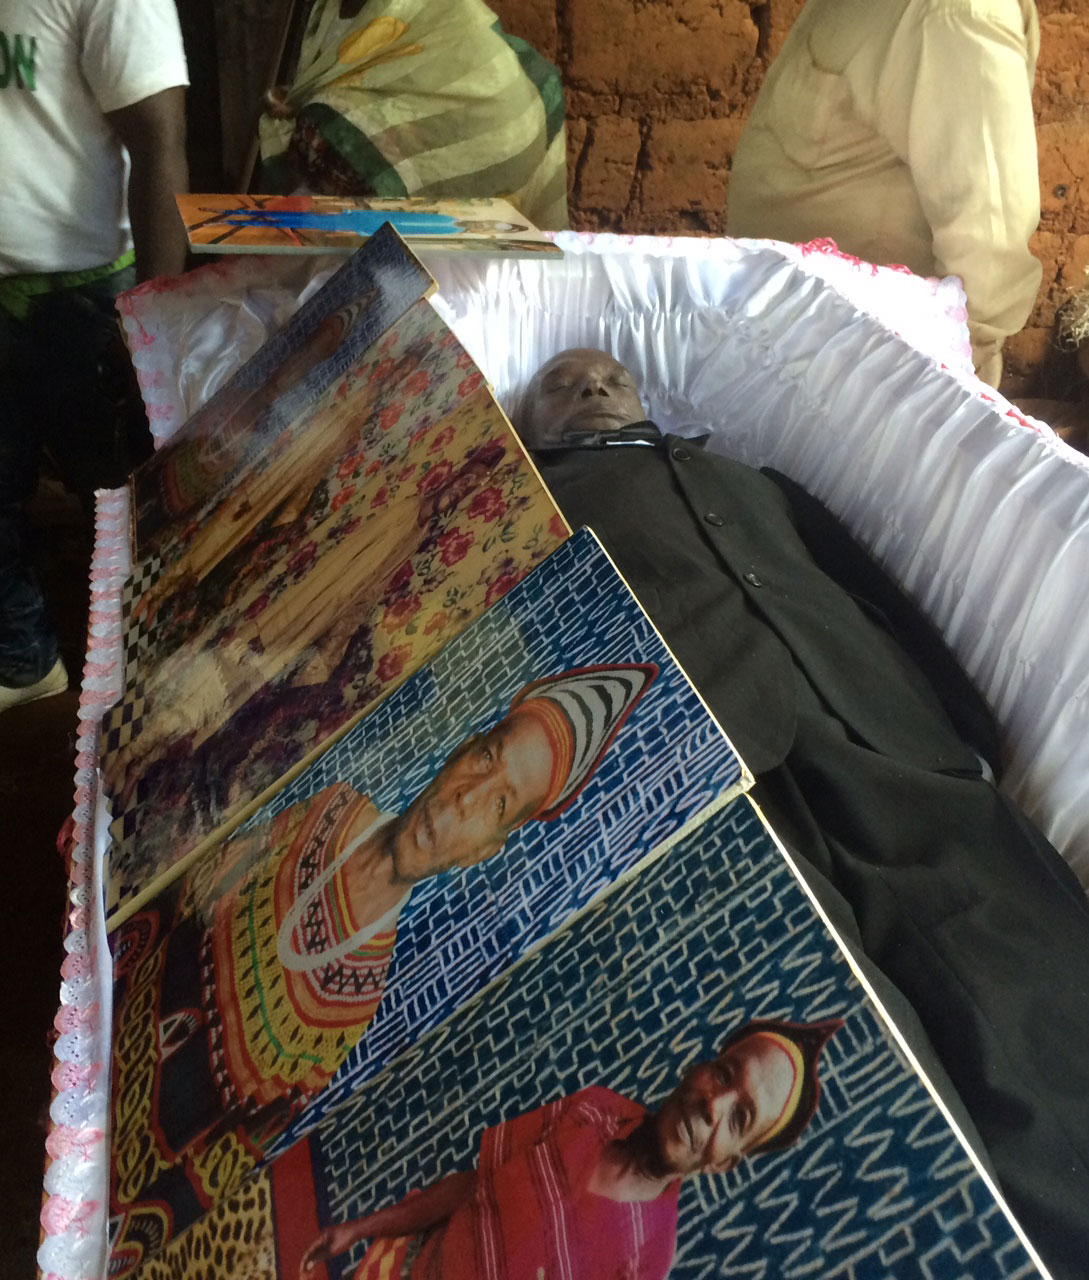 Portraits of Pa Jean surround his casket. Photo: Ellen Rocco